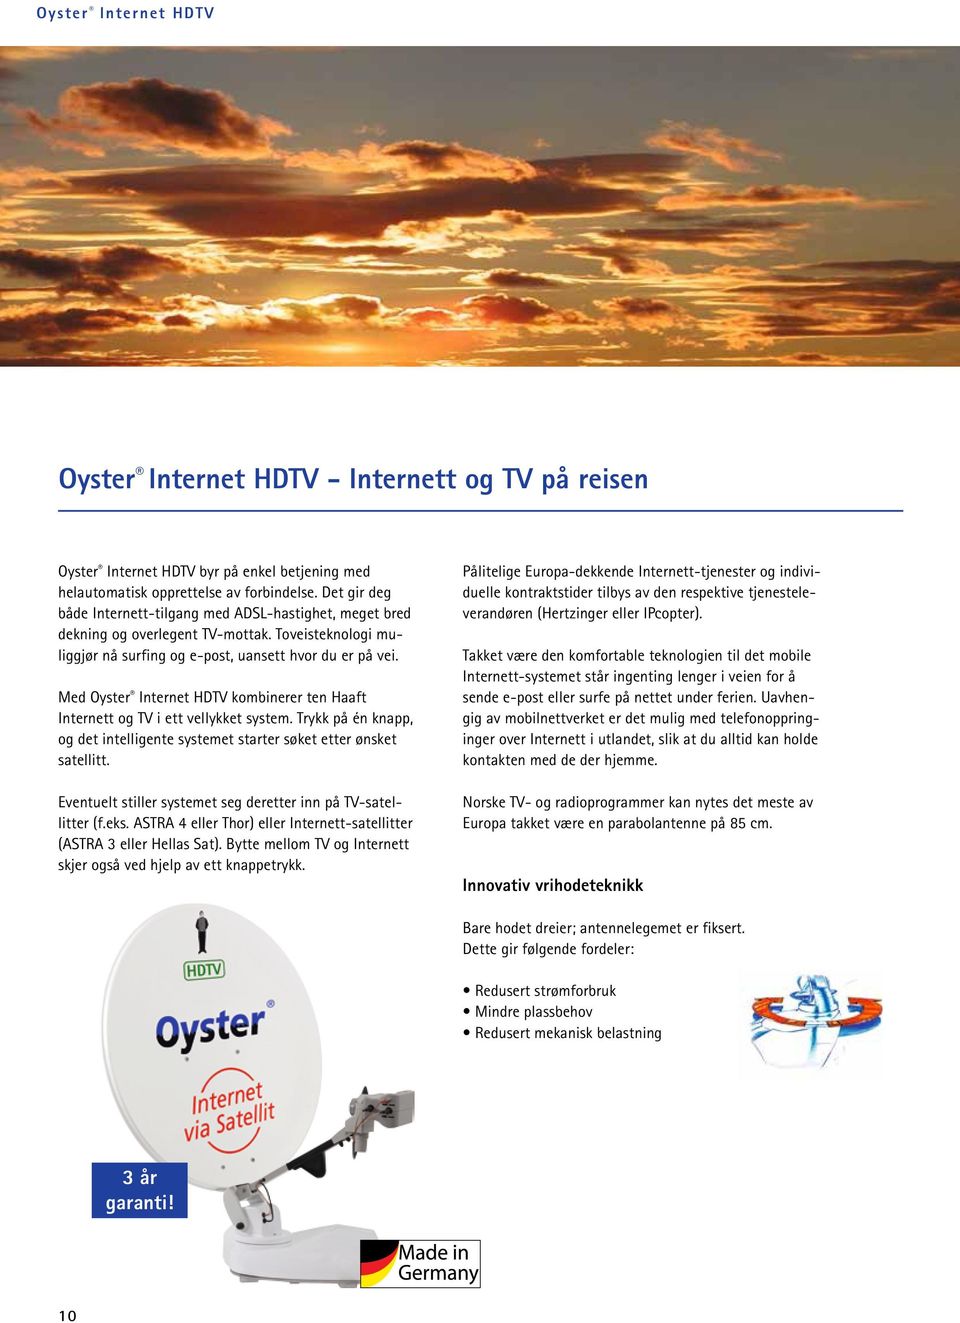 Med Oyster Internet HDTV kombinerer ten Haaft Internett og TV i ett vellykket system. Trykk på én knapp, og det intelligente systemet starter søket etter ønsket satellitt.